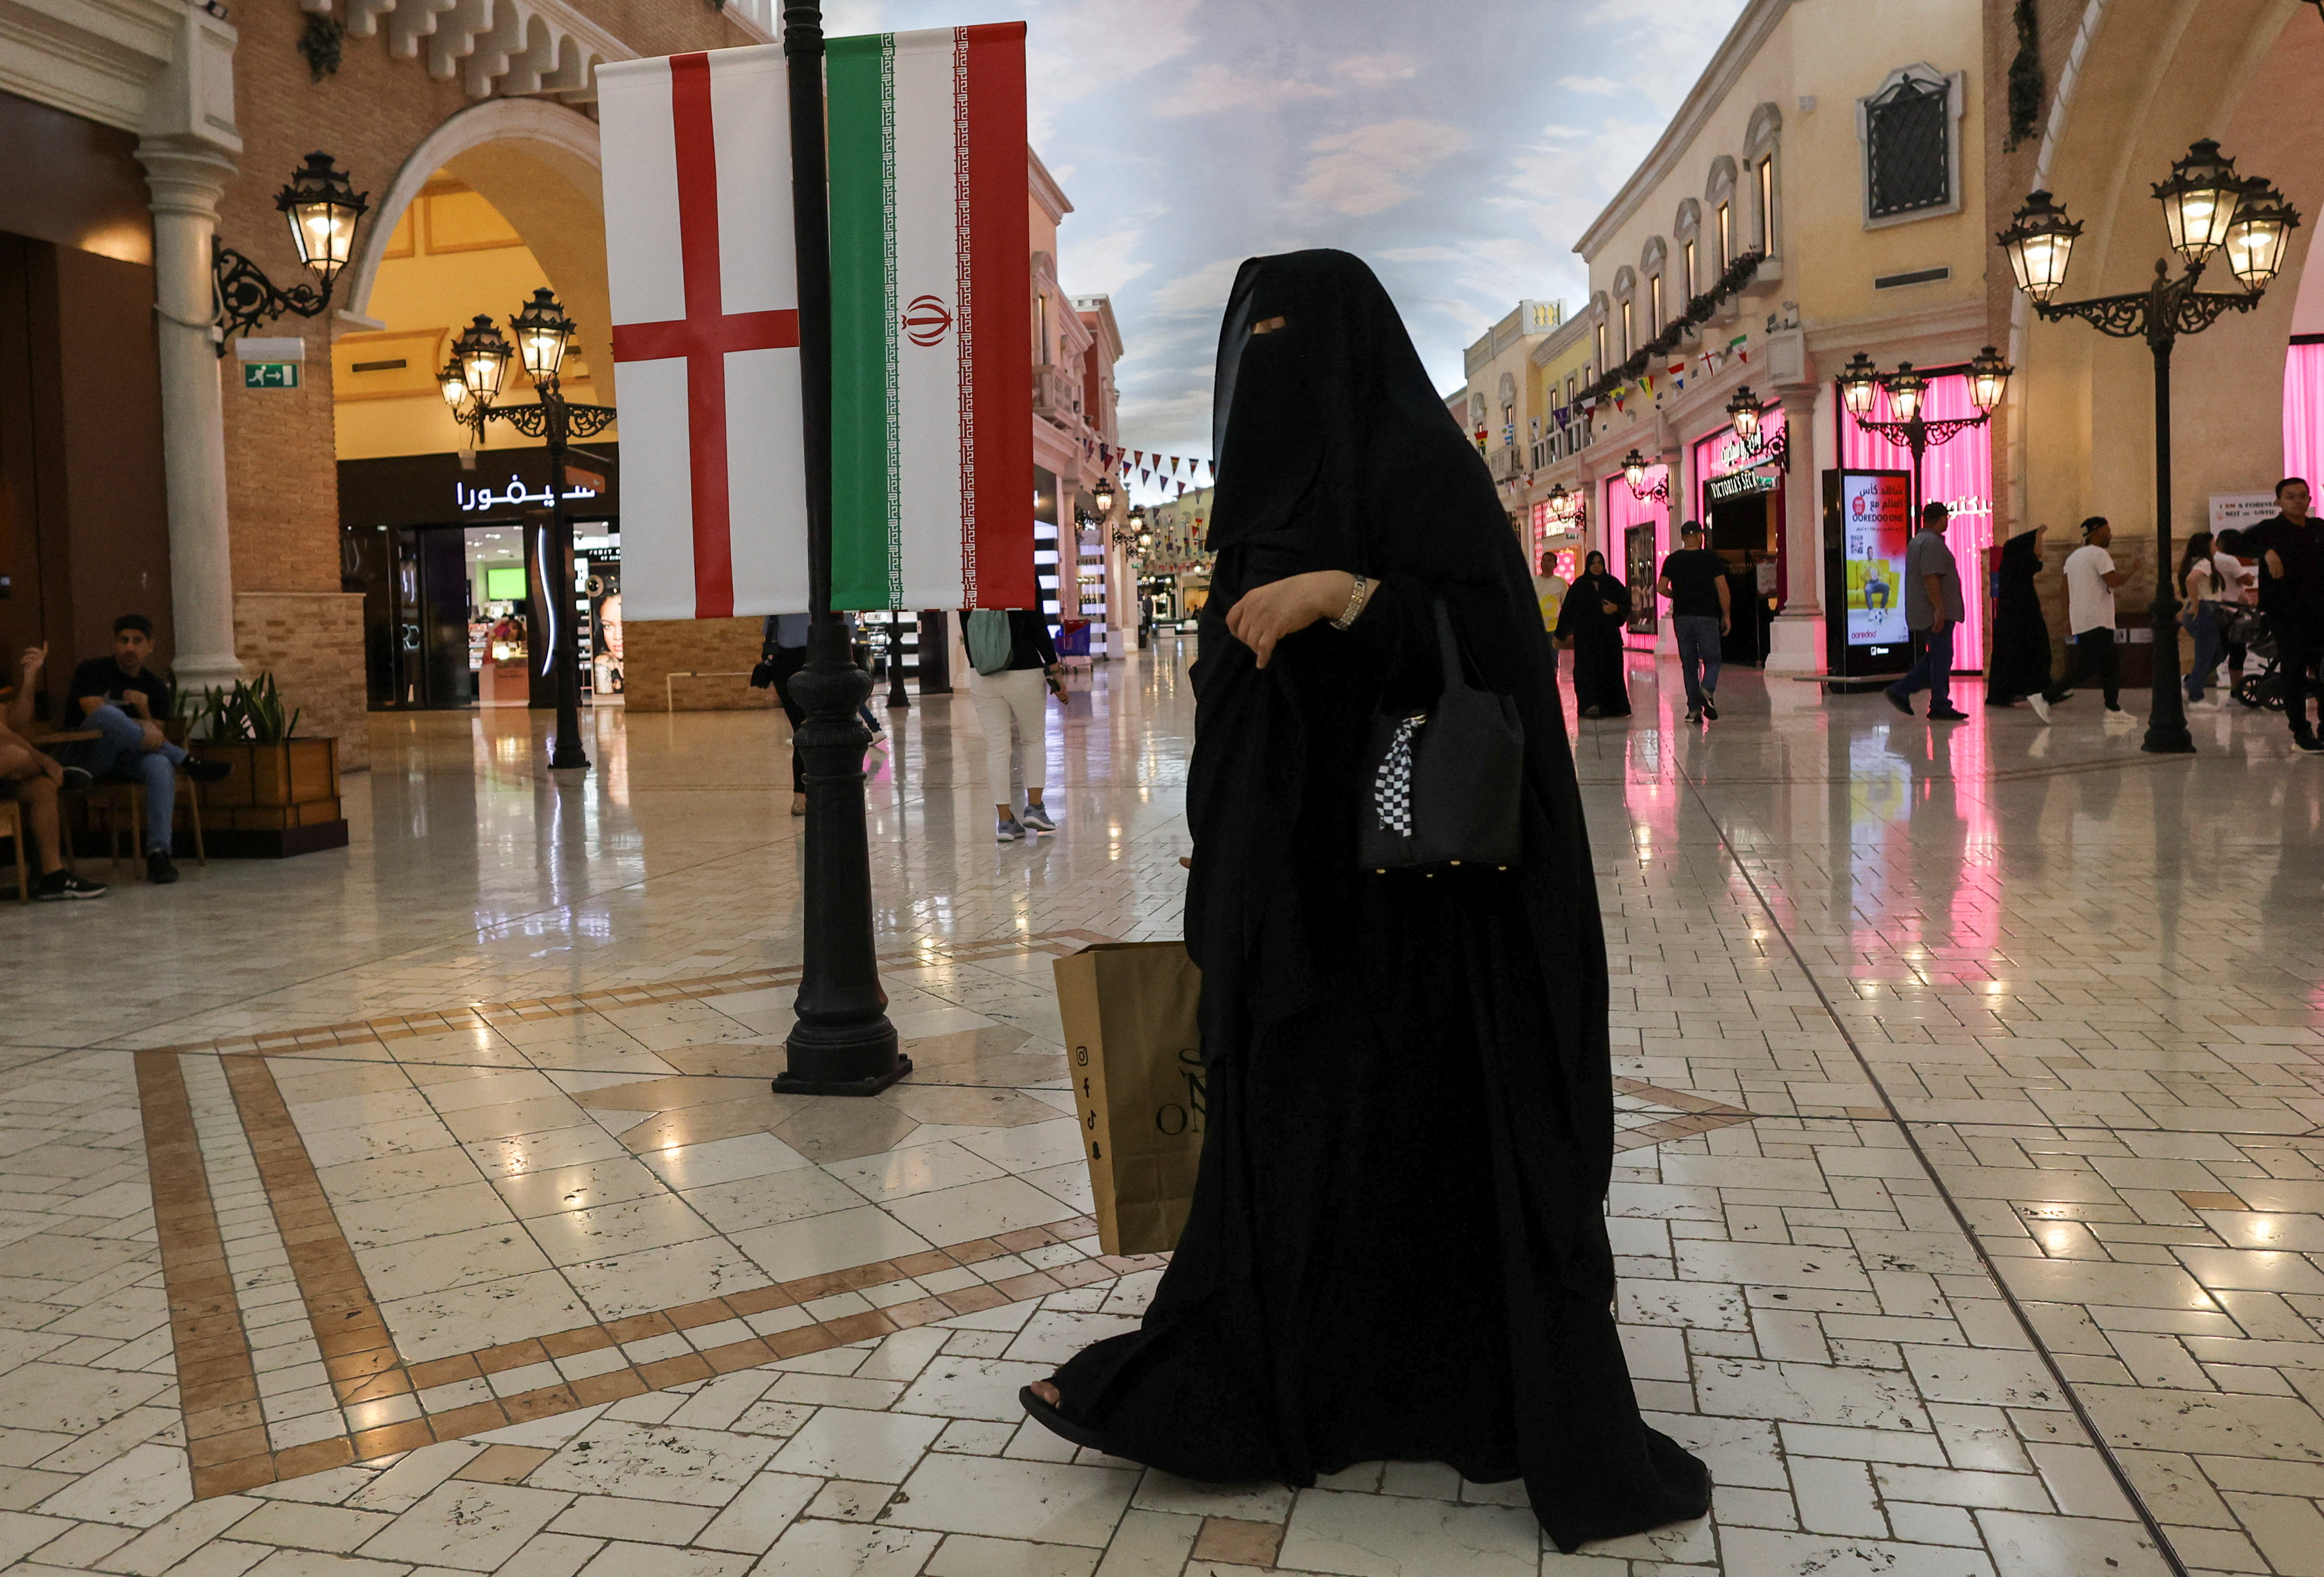 Las mujeres locales más ortodoxas usan su niqab durante el día y la noche (REUTERS/Amr Abdallah Dalsh)